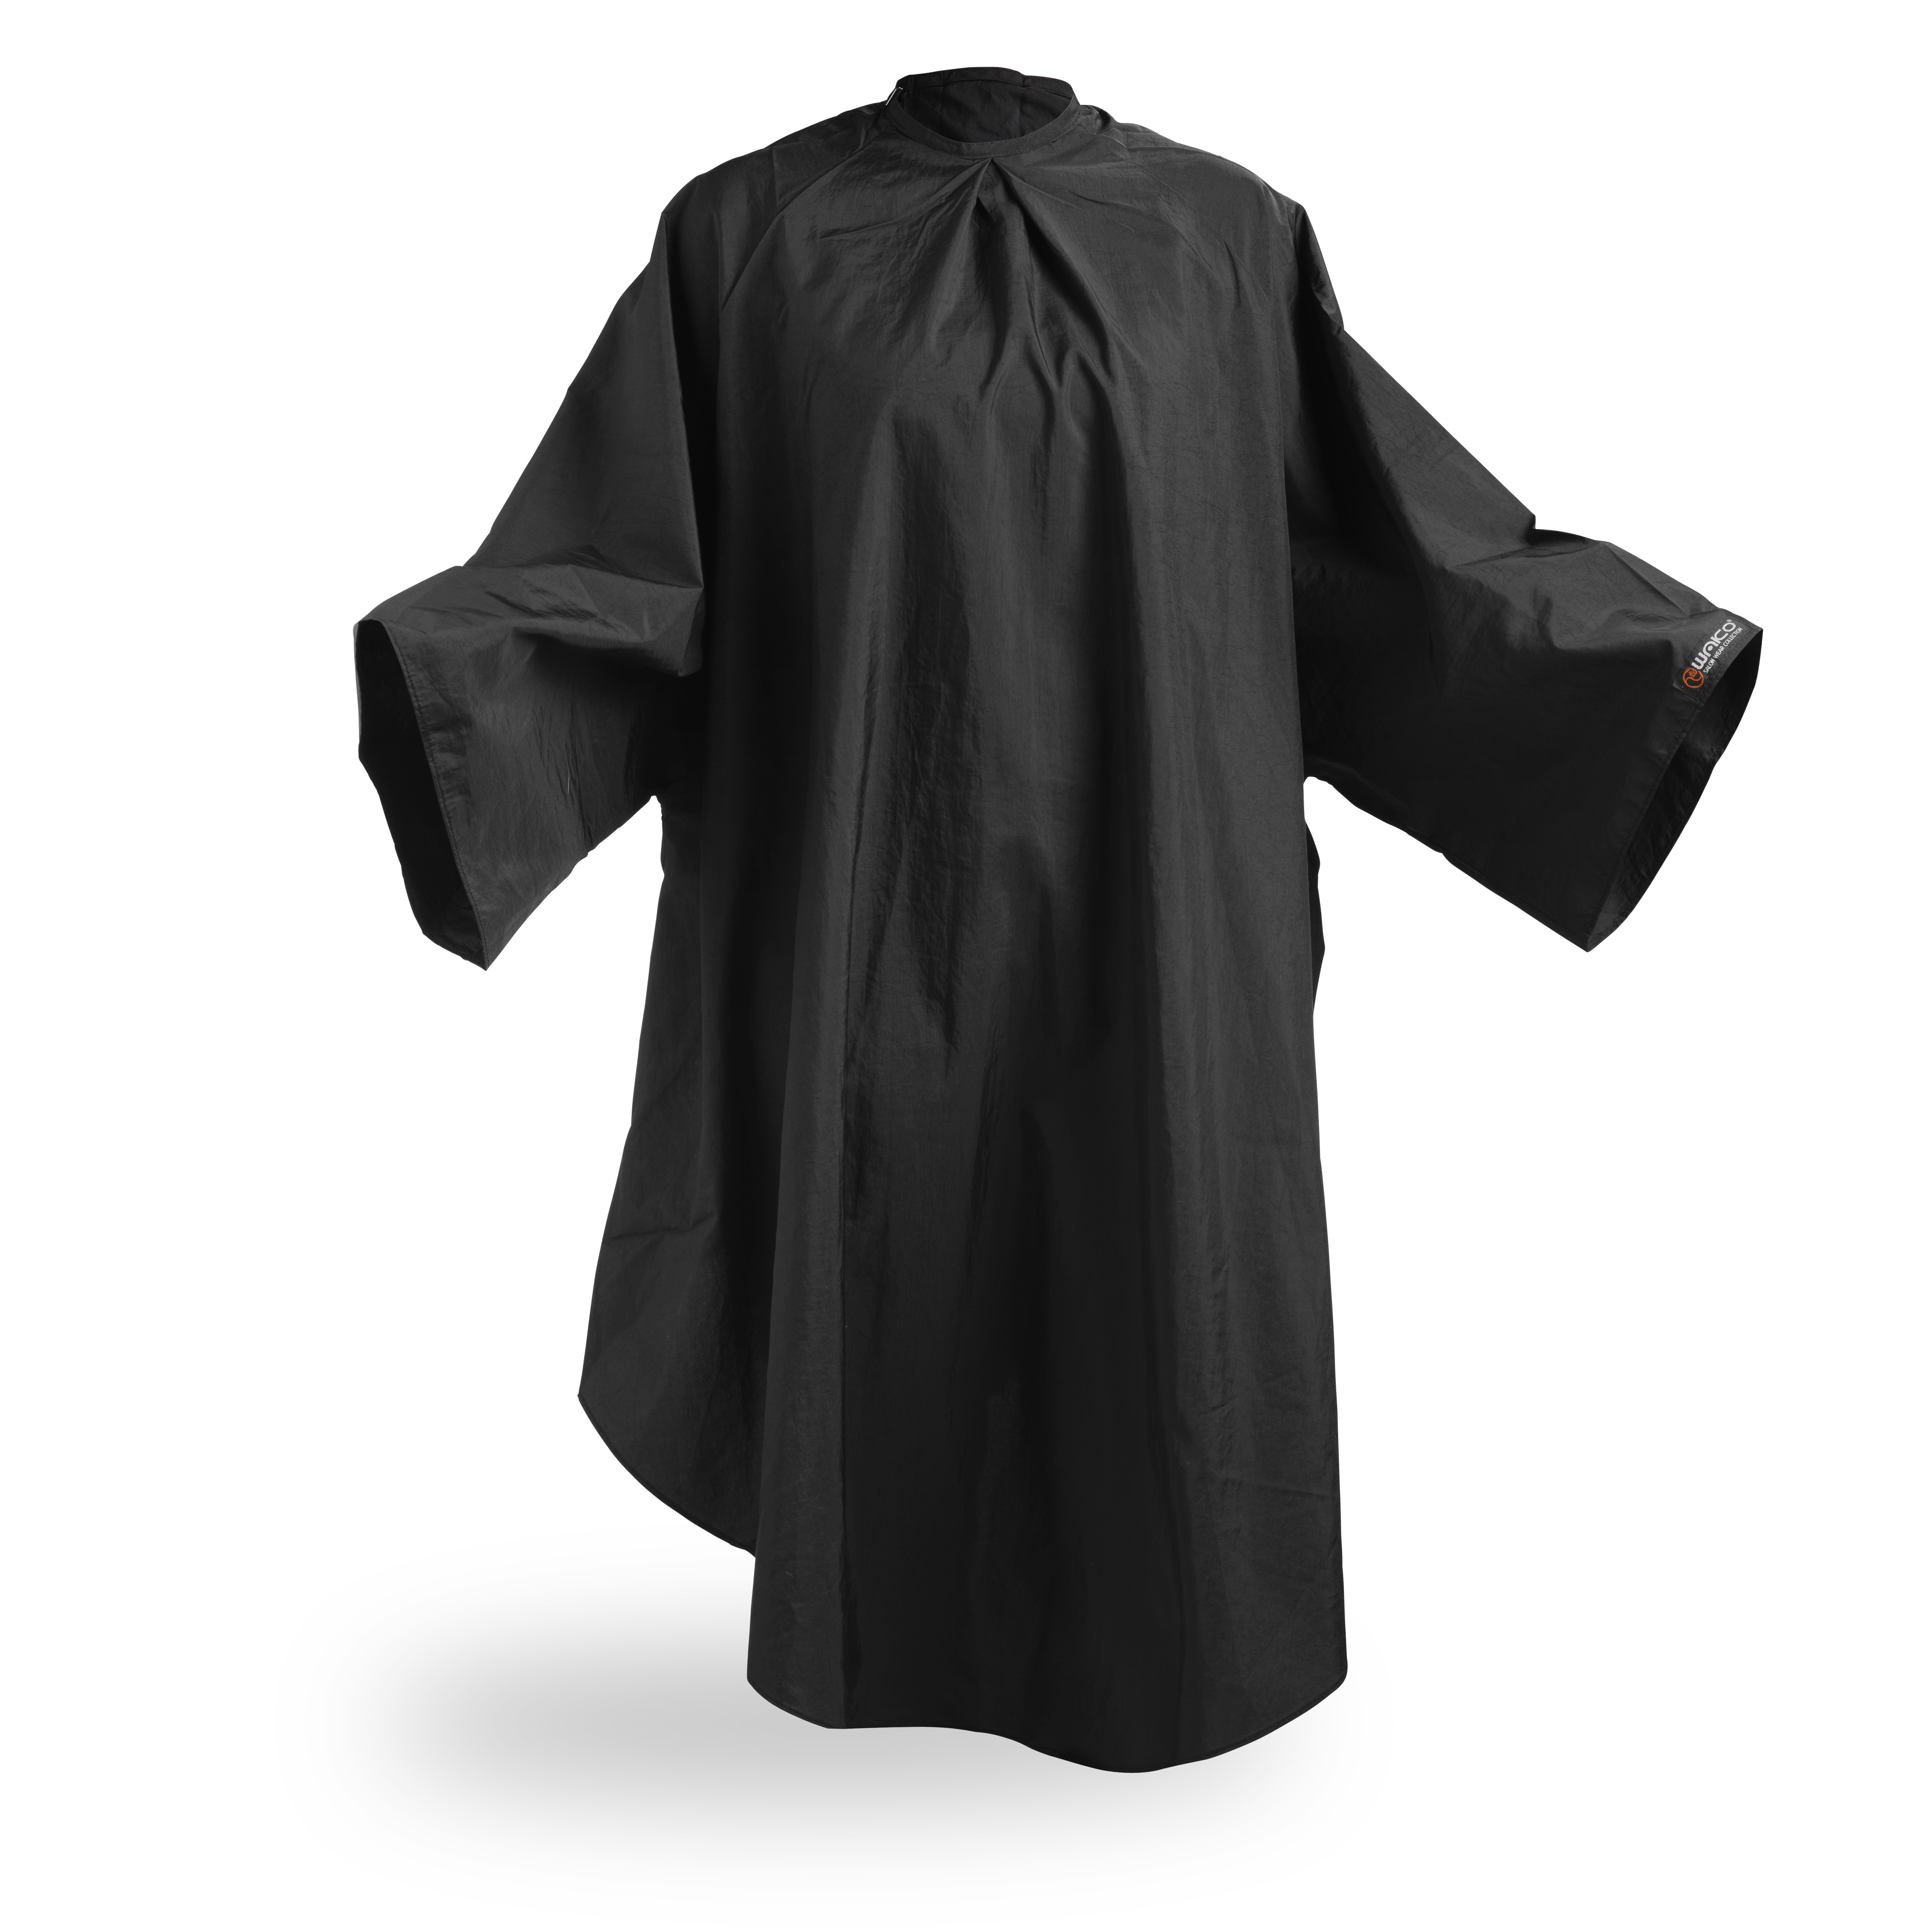 Wako 5670 Cutting dress, black - pláštěnka na stříhání, černá, na háčky